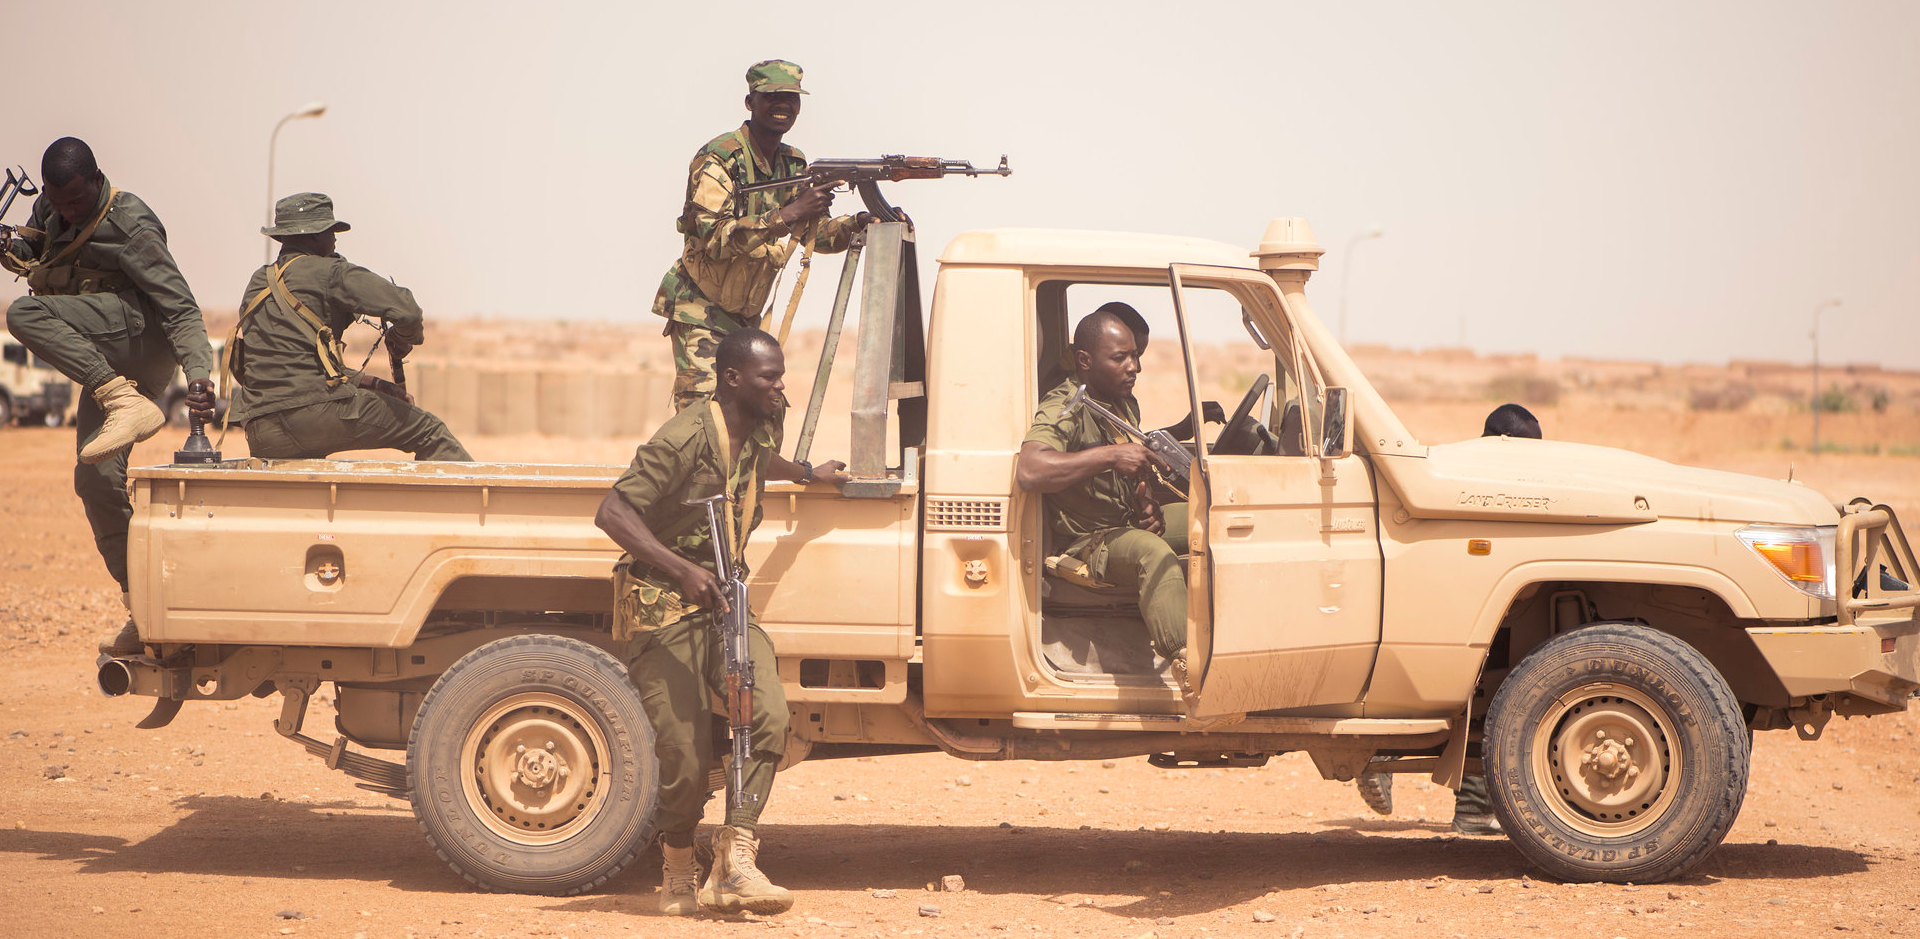 L'Etat de Kaduna, au Nigeria, est considéré comme "l'épicentre" des attaques anti-chrétiennes | photo d'illustration © US Africa Command/Flickr/CC BY 2.0